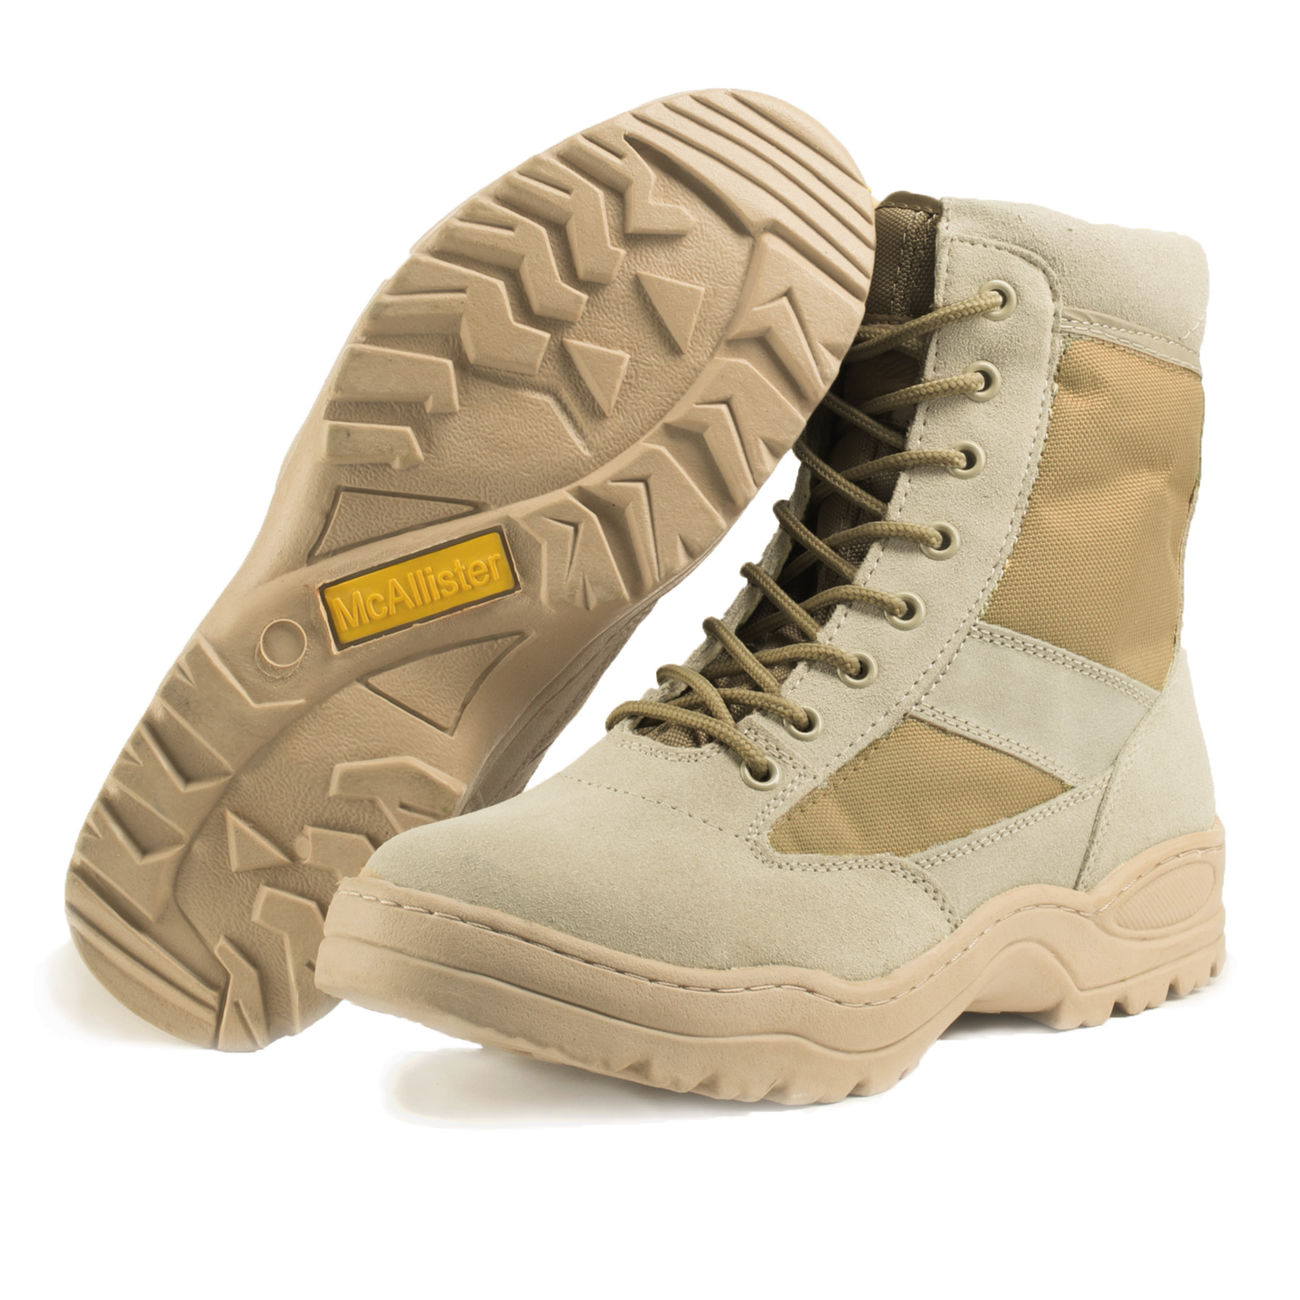 McAllister Outdoor Boots Stiefel sand Bild 1